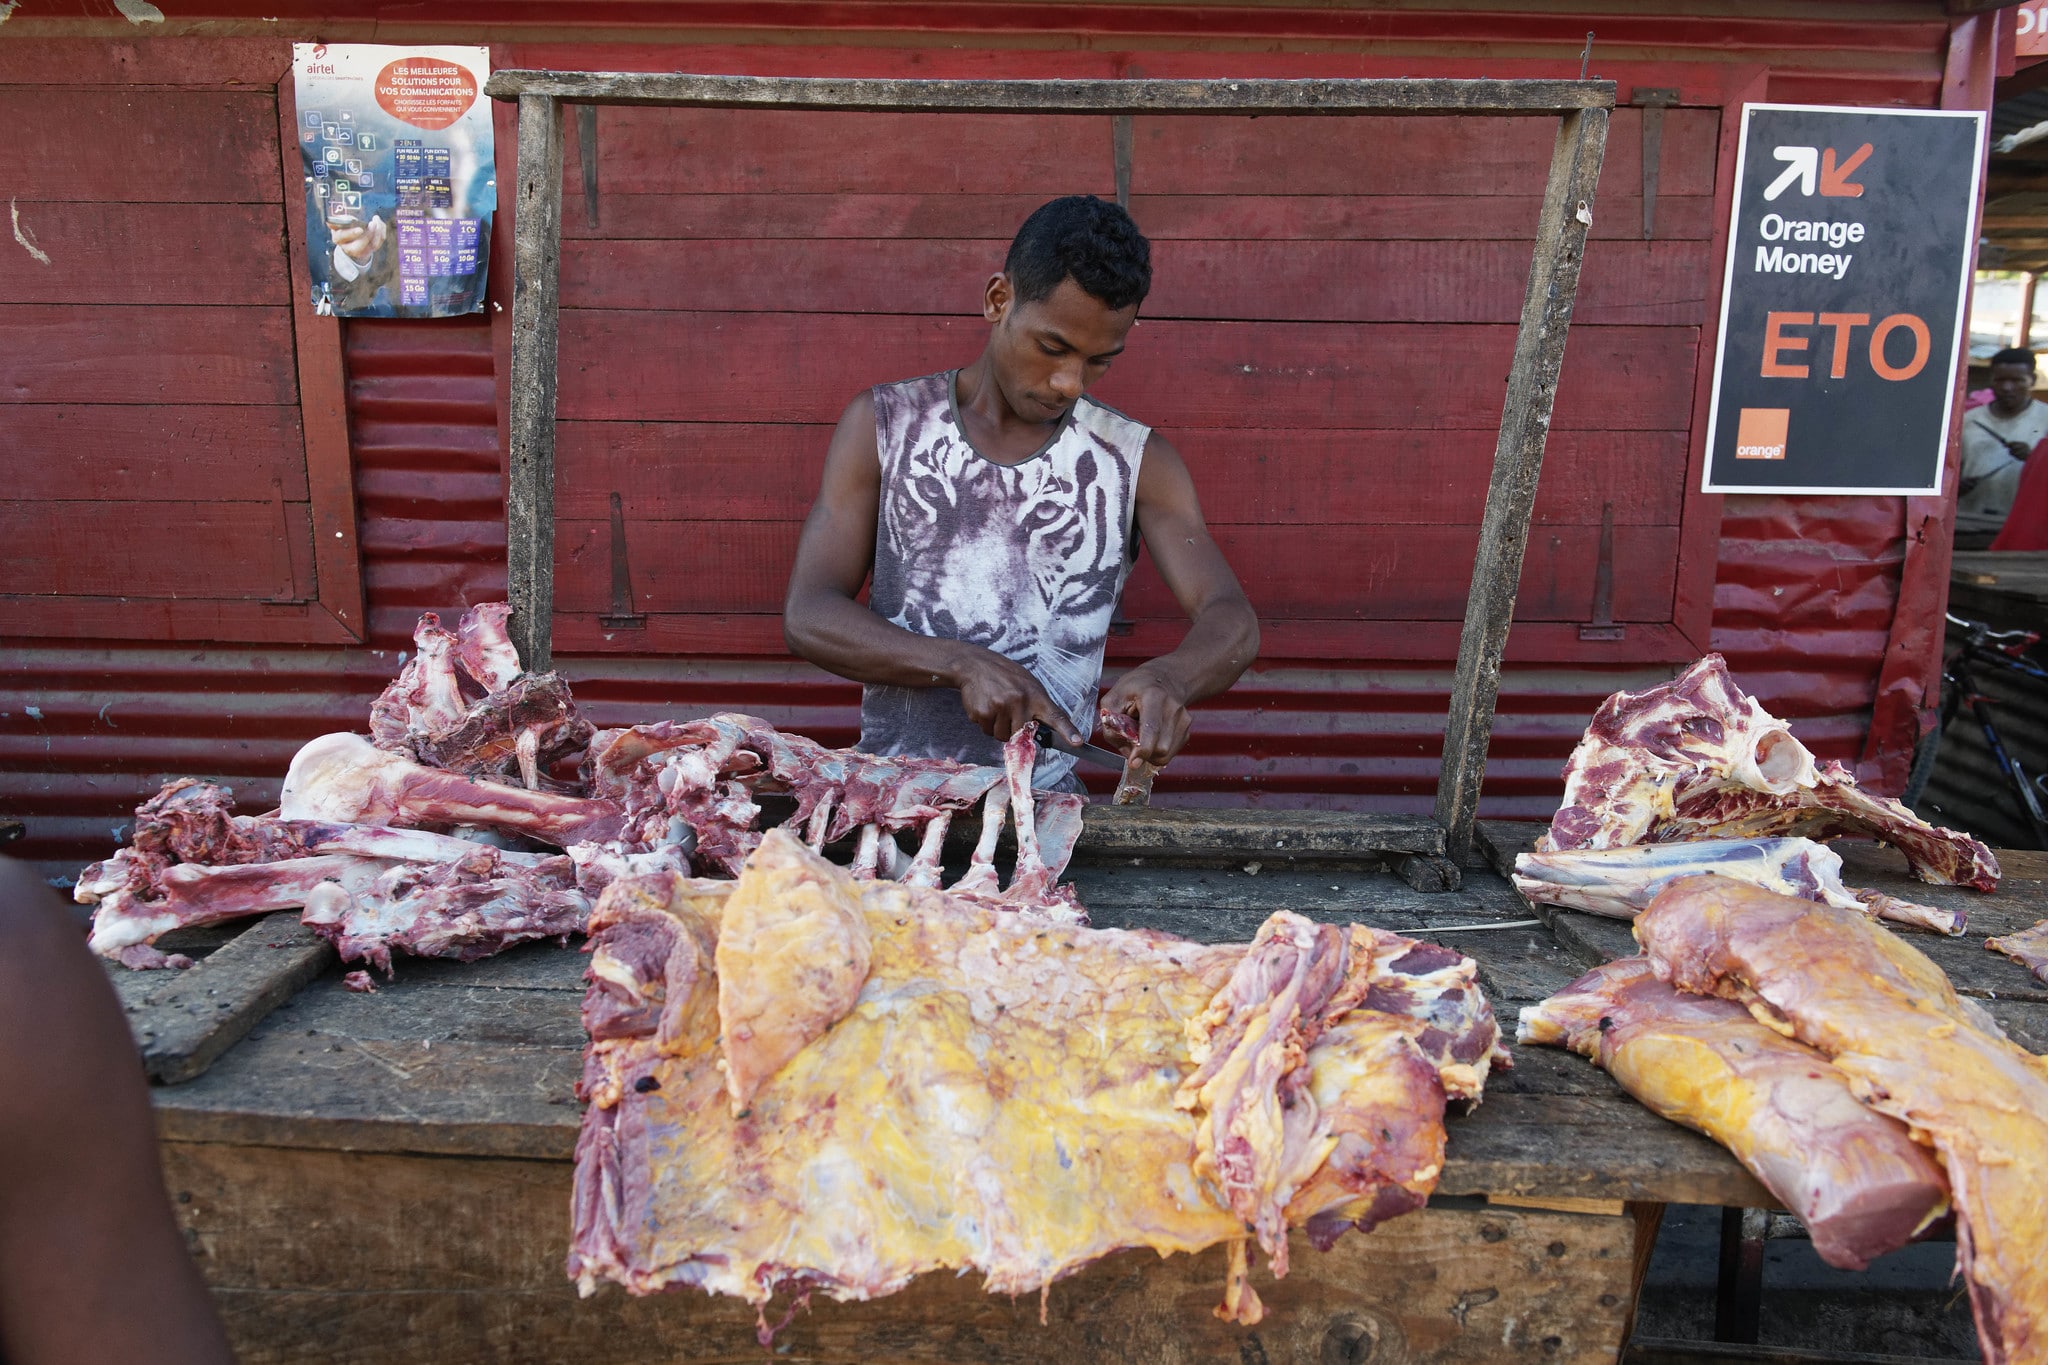 Venditore ambulante, lavoratore informale in Madagascar. Foto ILO - Flickr Creative Commons